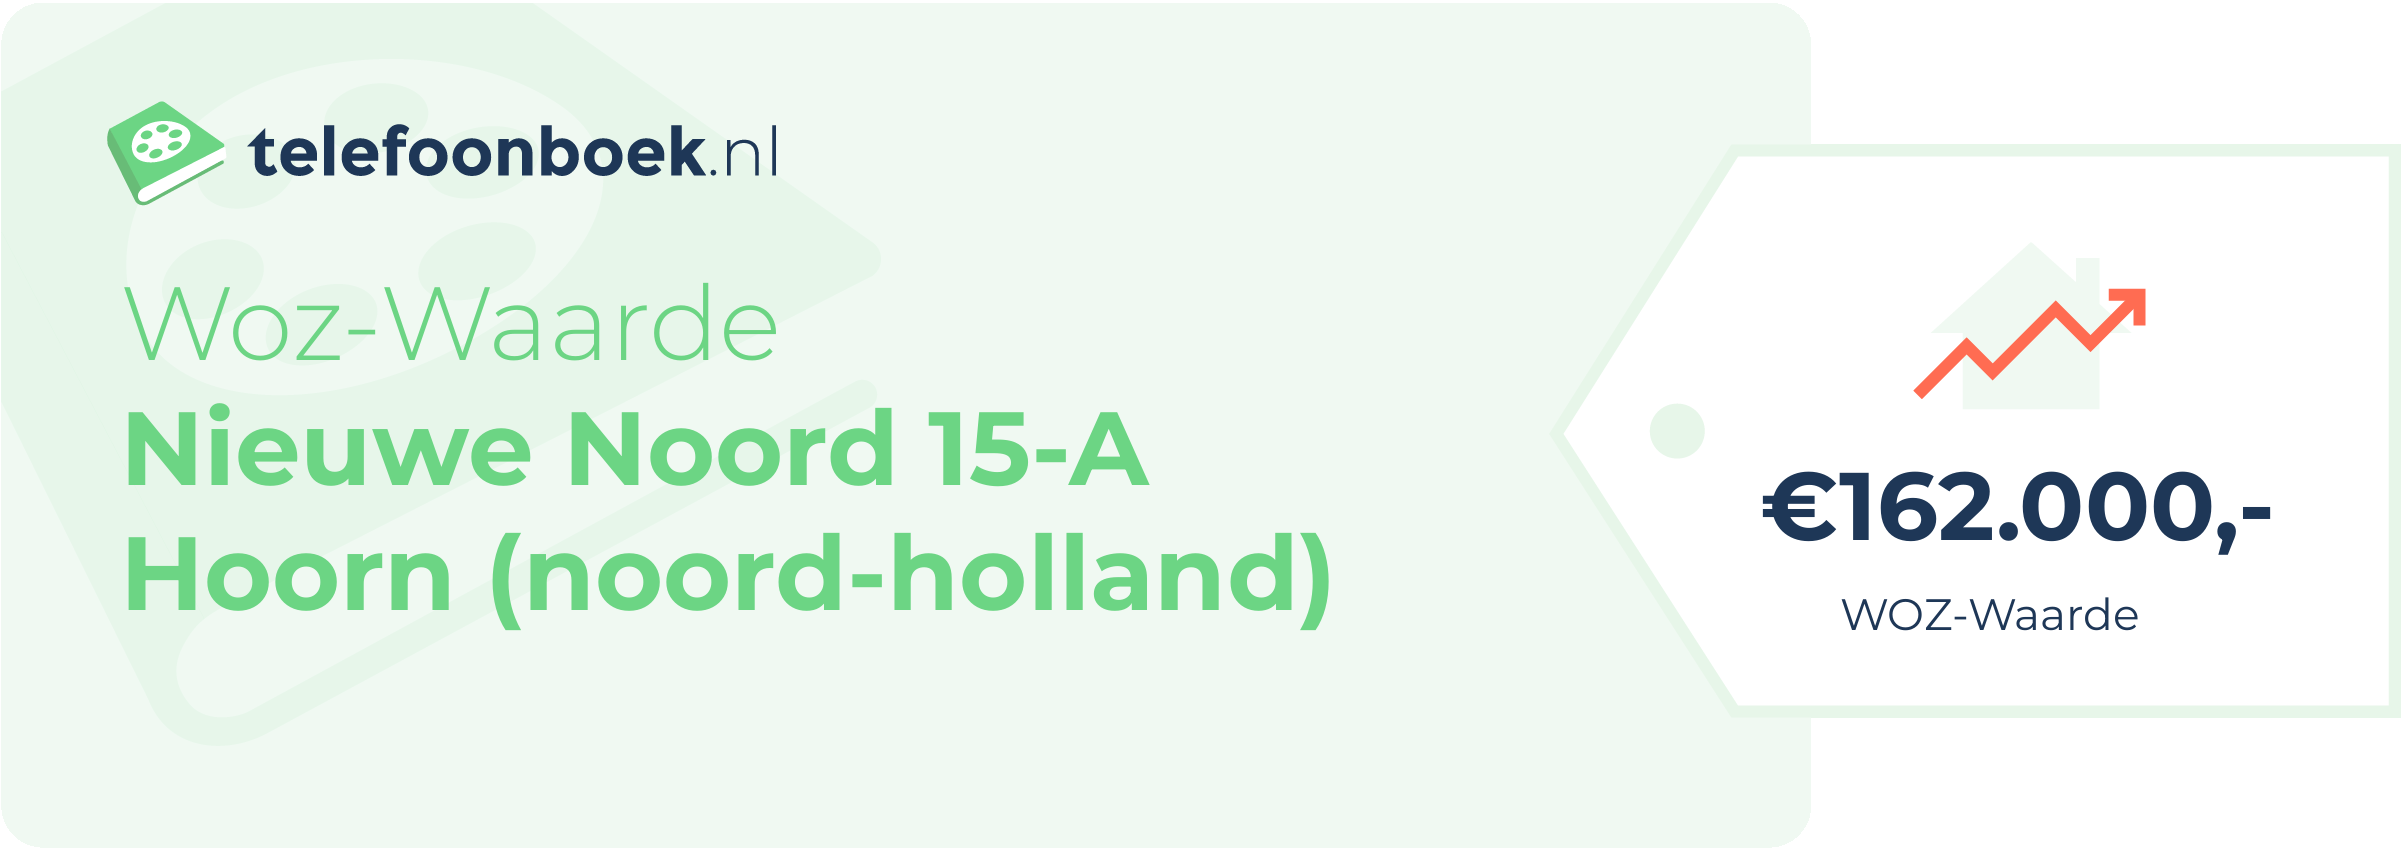 WOZ-waarde Nieuwe Noord 15-A Hoorn (Noord-Holland)